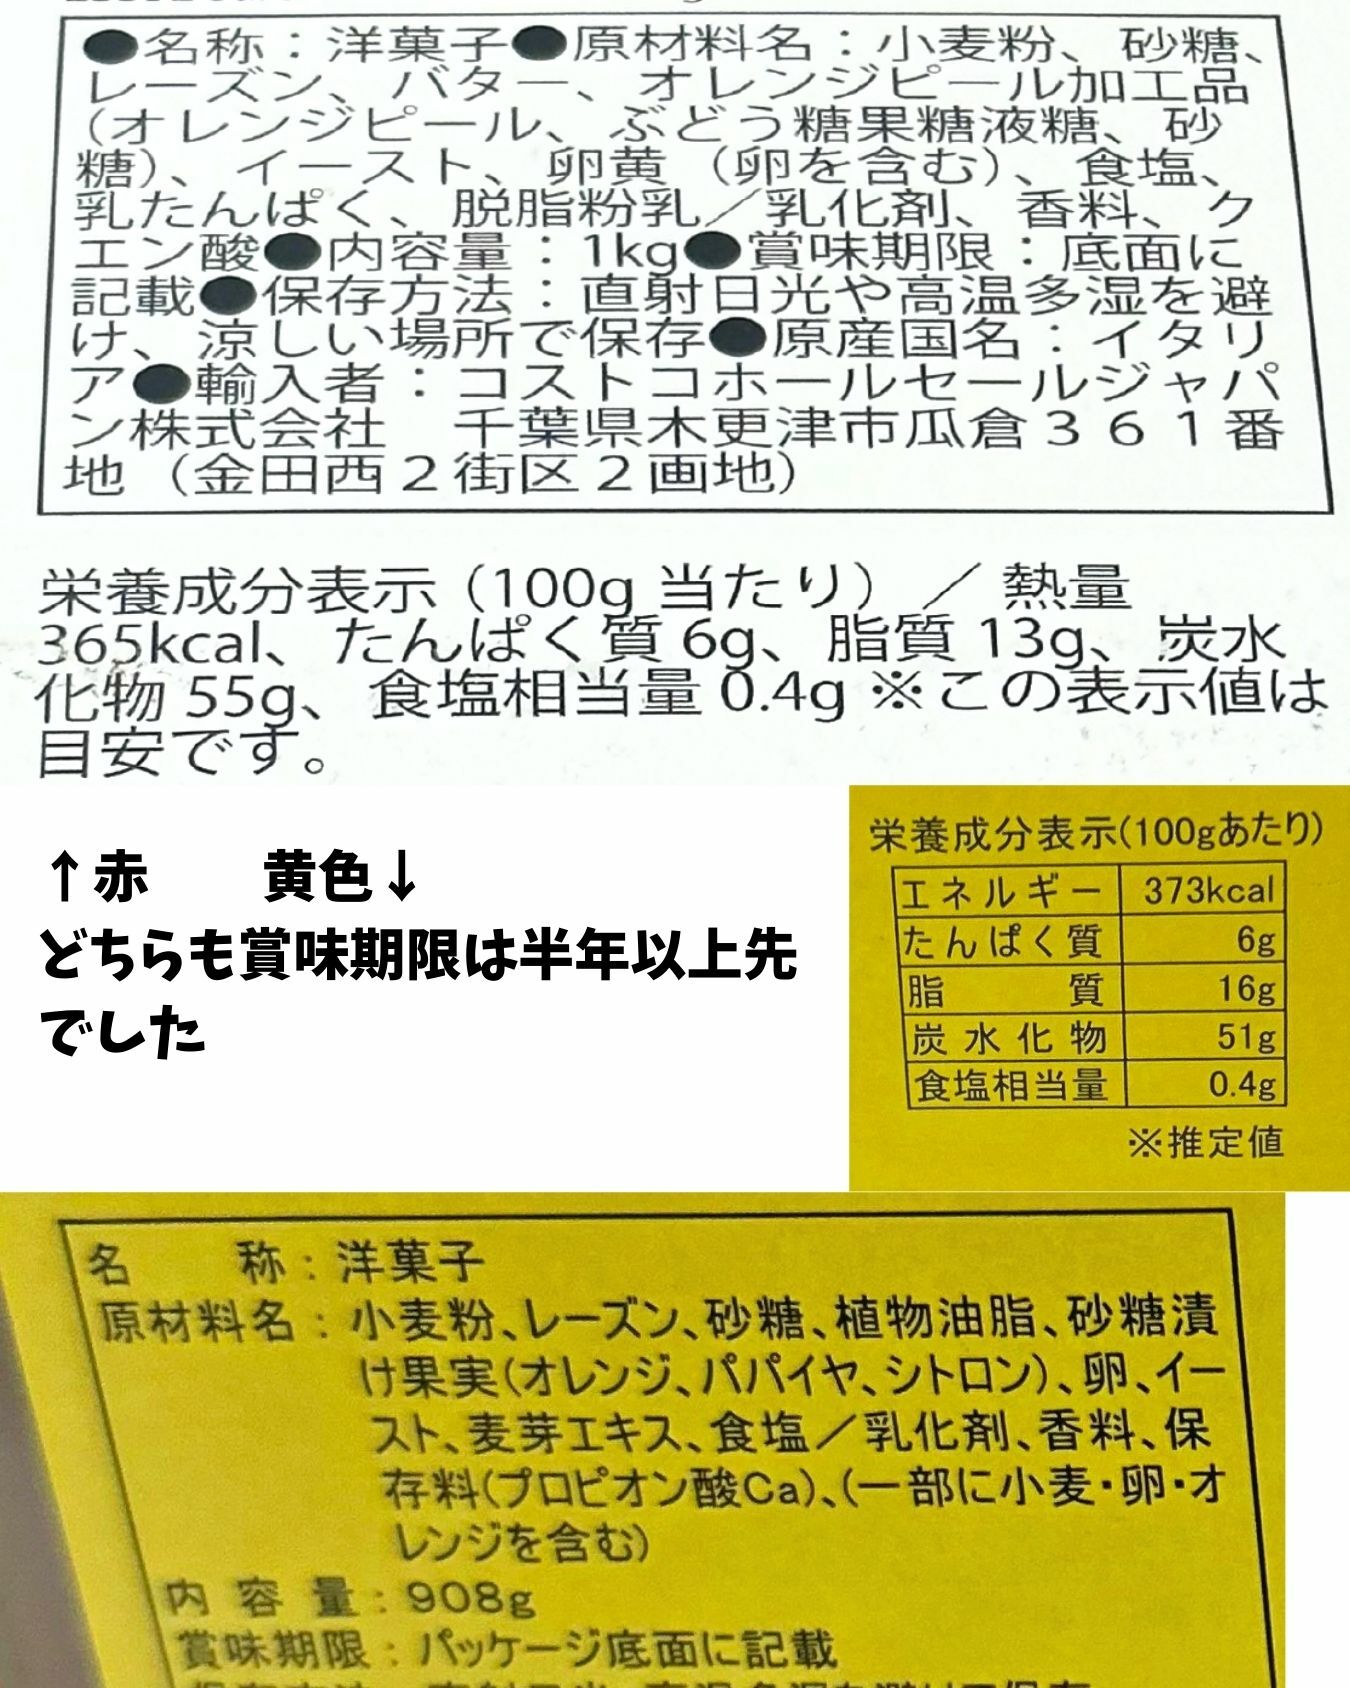 【コストコ】パネトーネ2種のパッケージ情報